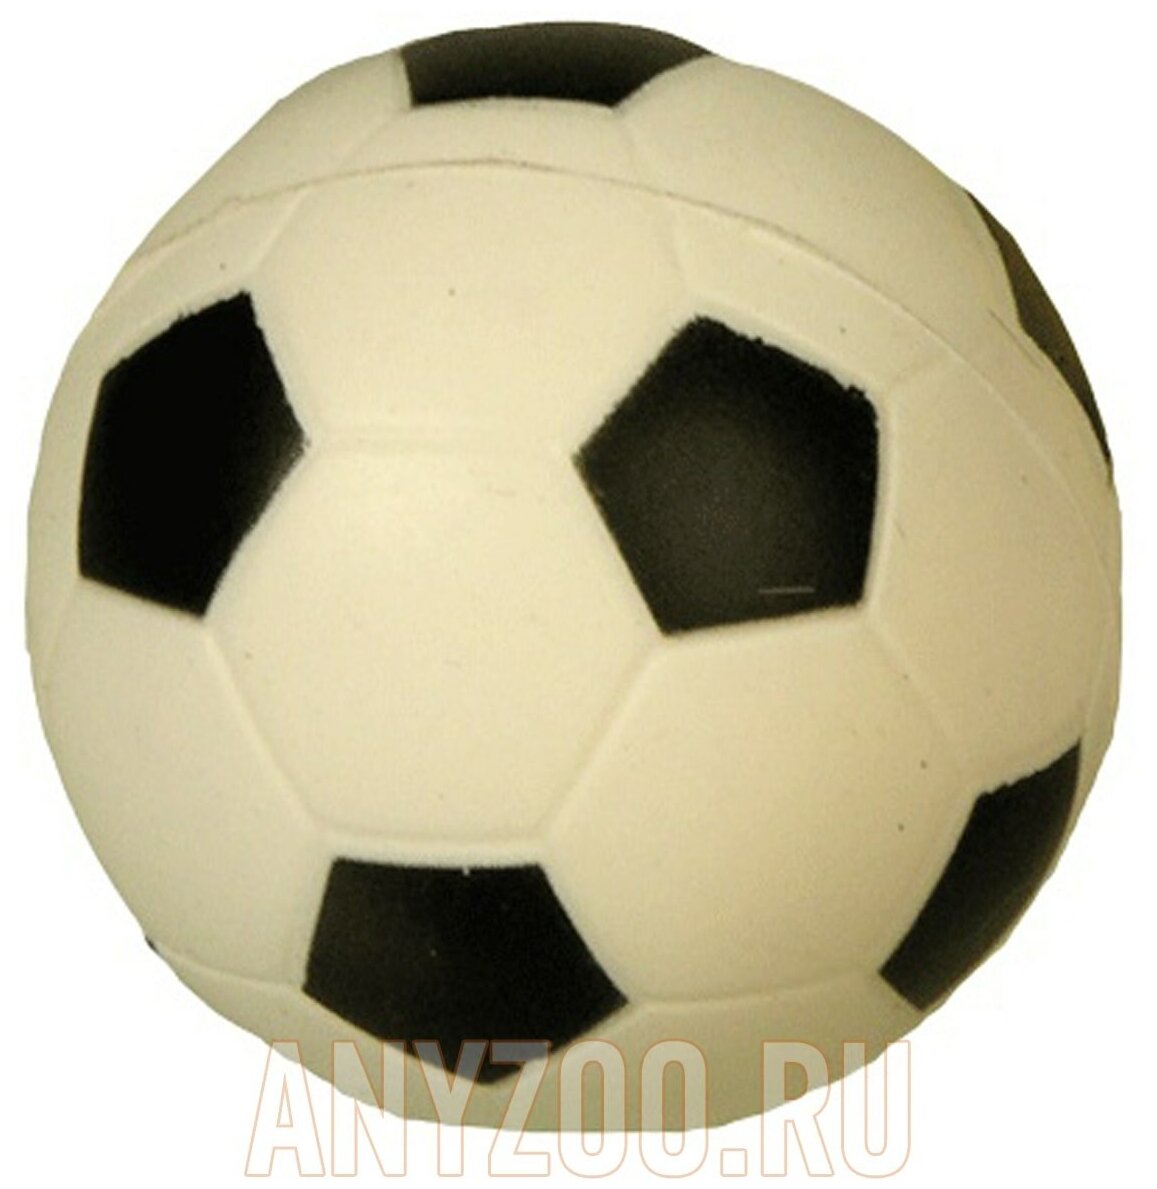 Зооник Игрушка Мяч футбольный 7,2см (С003) зеленый, 0,07 кг